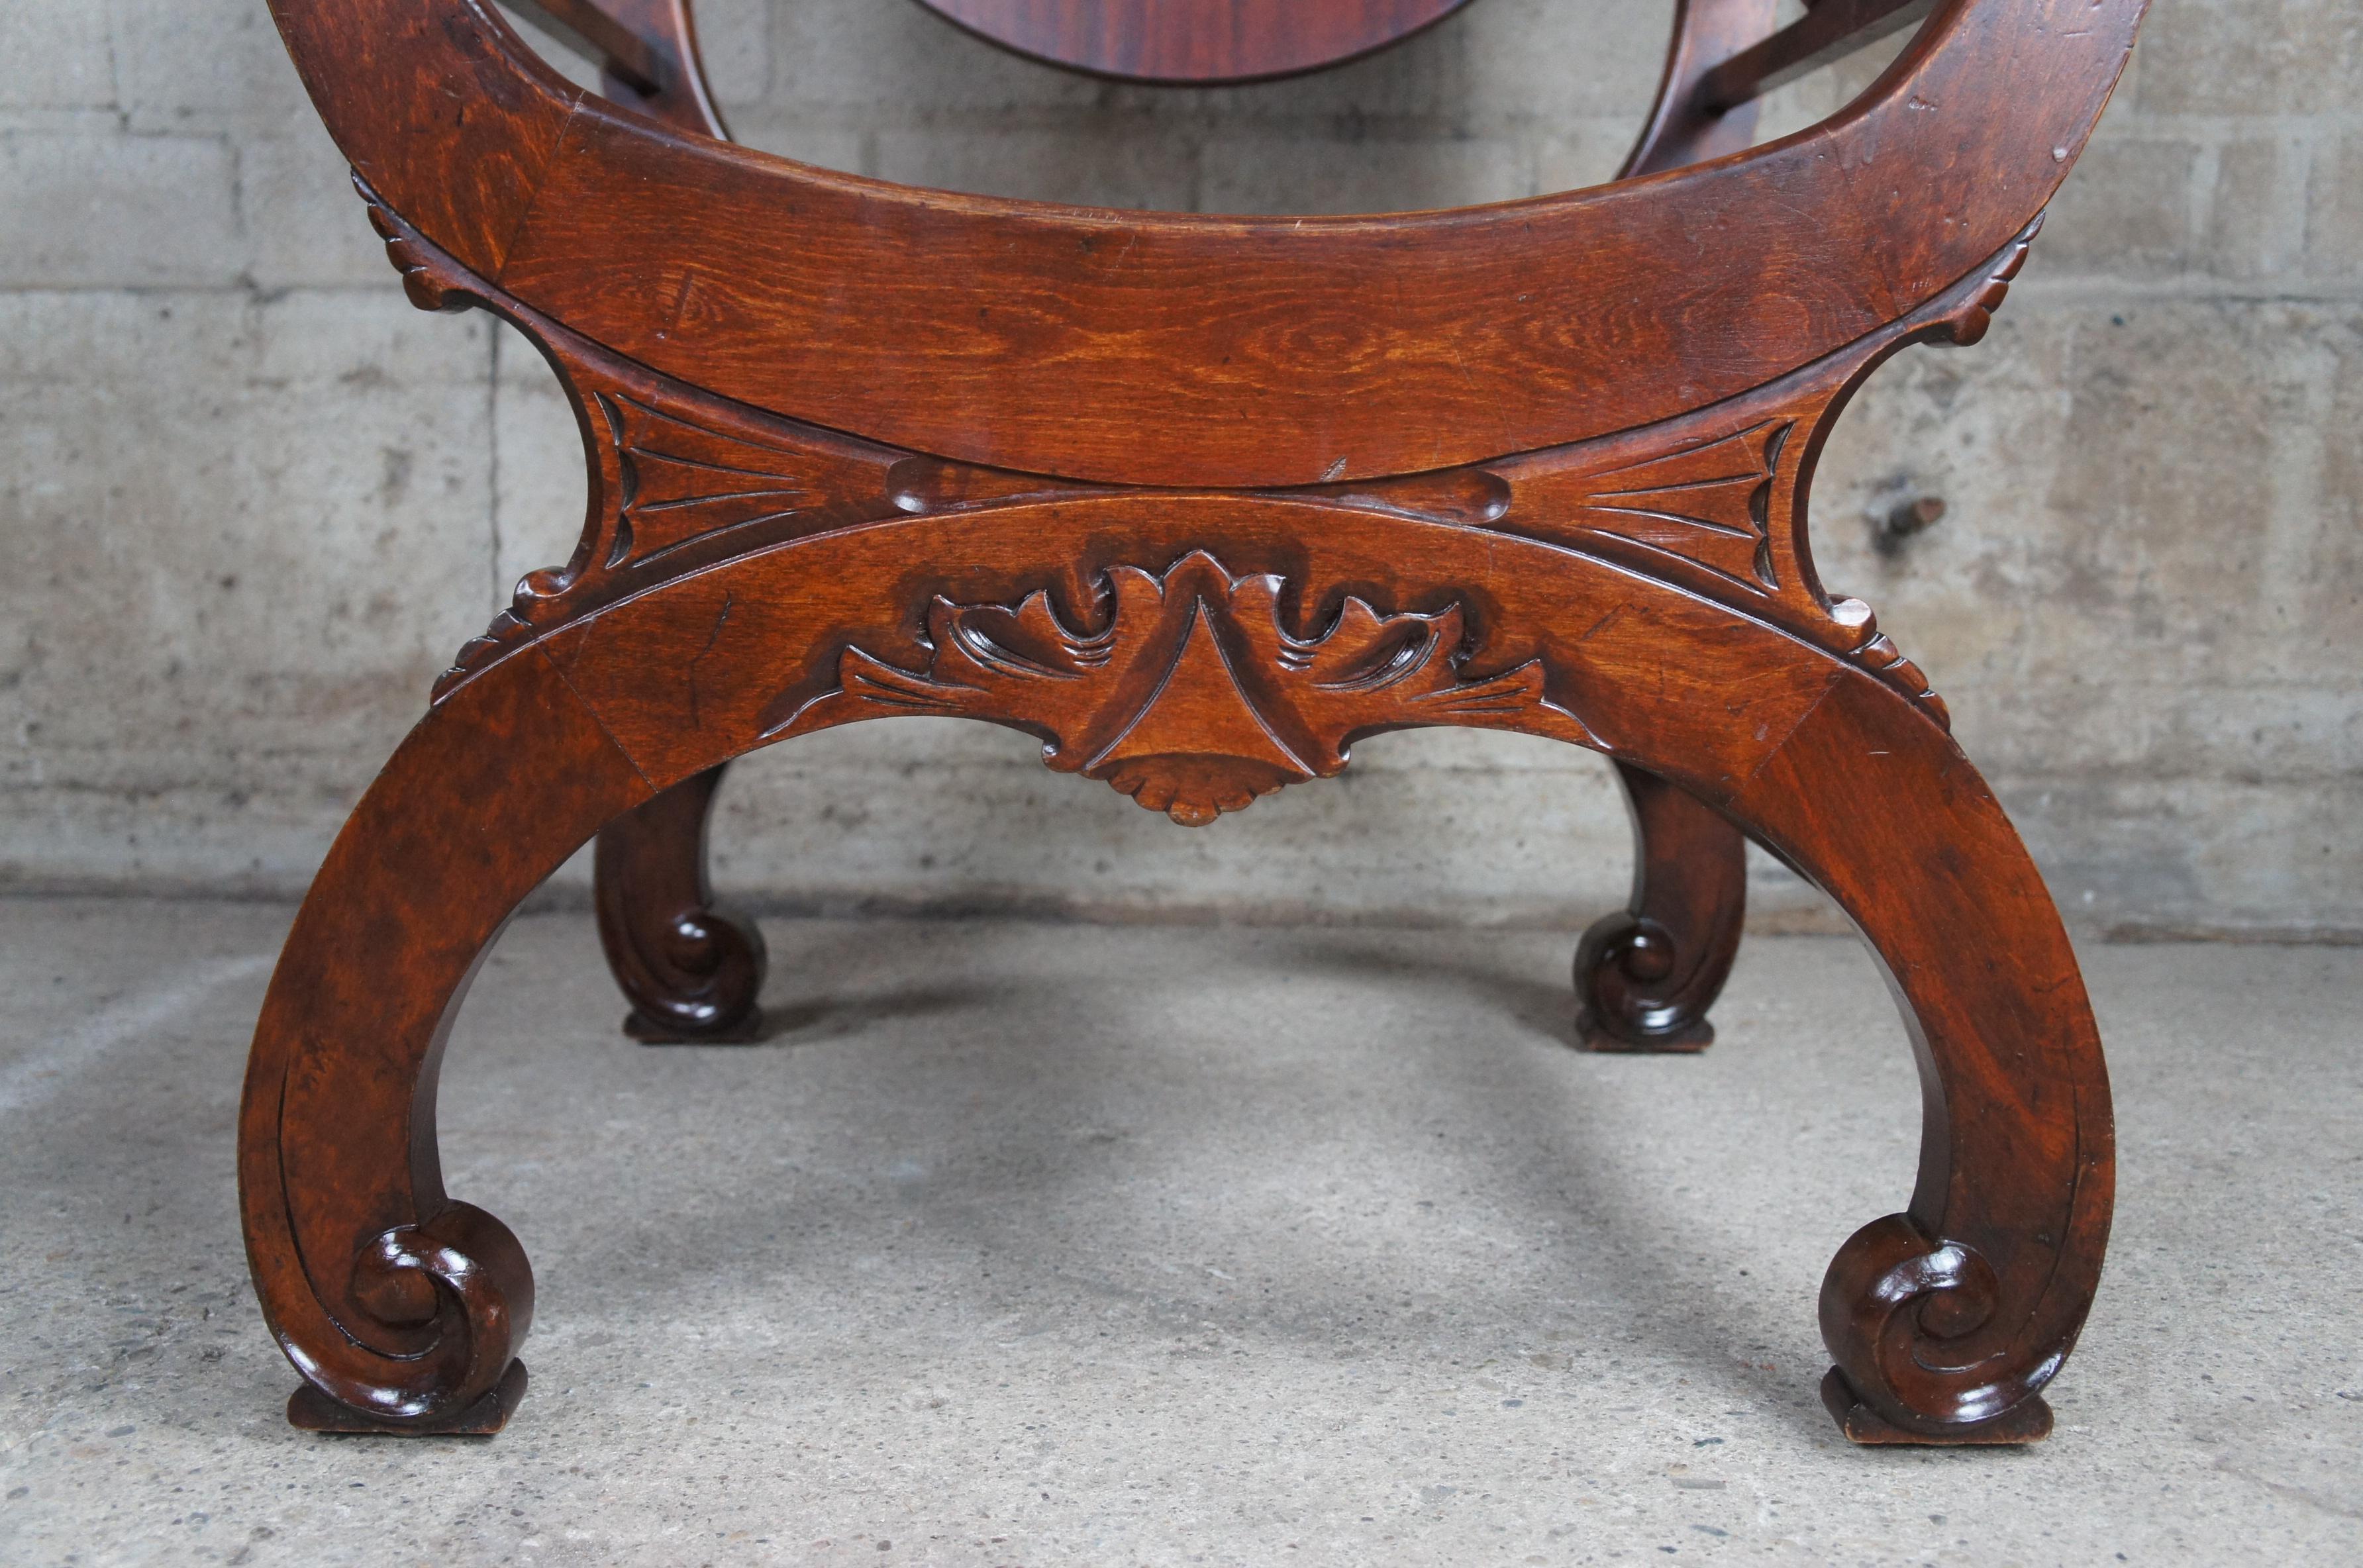 Antique Renaissance Revival Mahogany Curule Savonarola Lion Throne Arm Chair For Sale 1